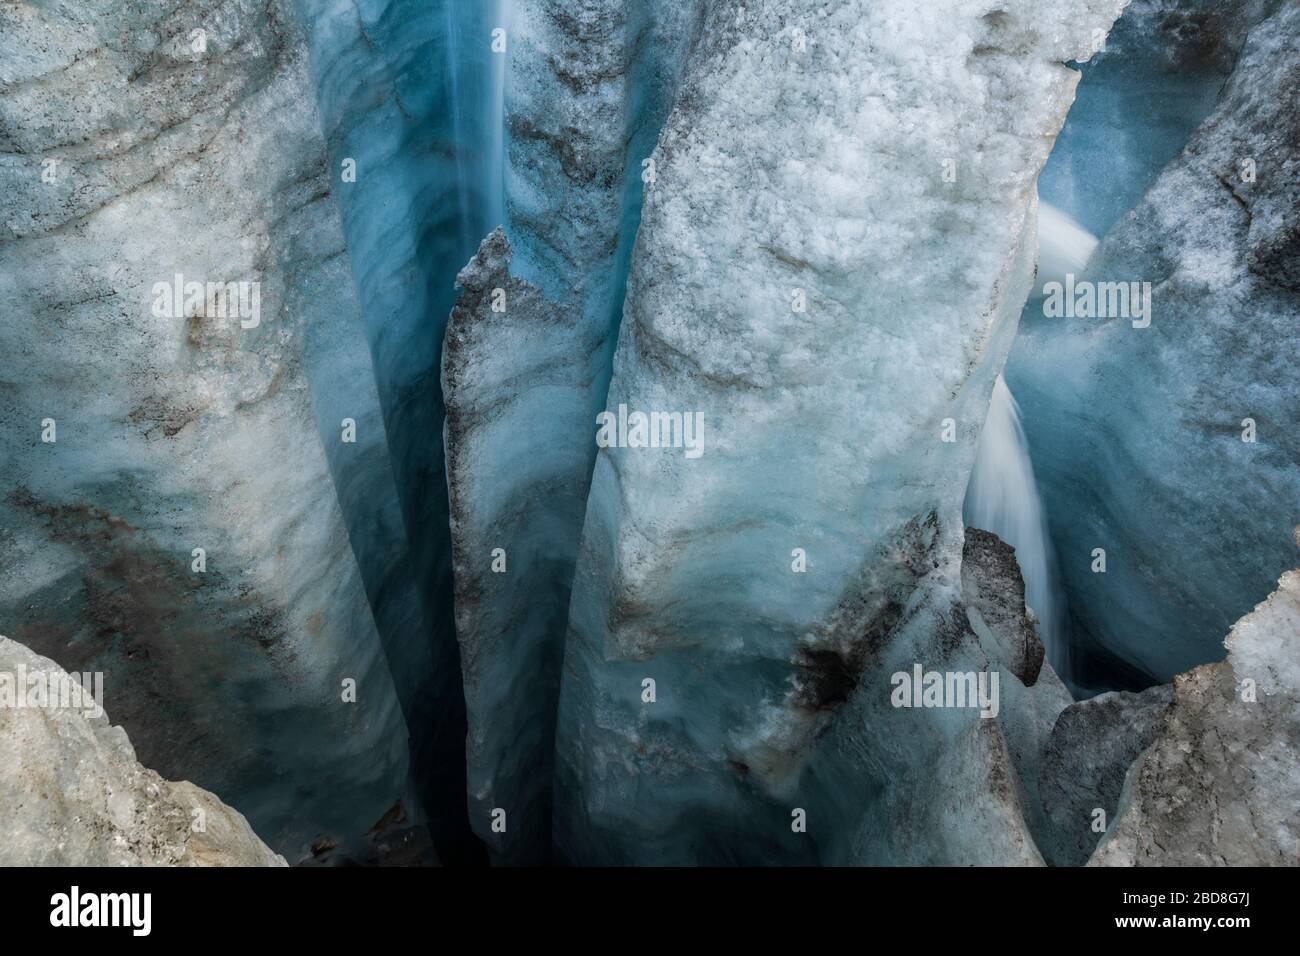 Deep glacial moulin on the surface of Snowbird Glacier, Talkeetna Mountains, Alaska. Stock Photo